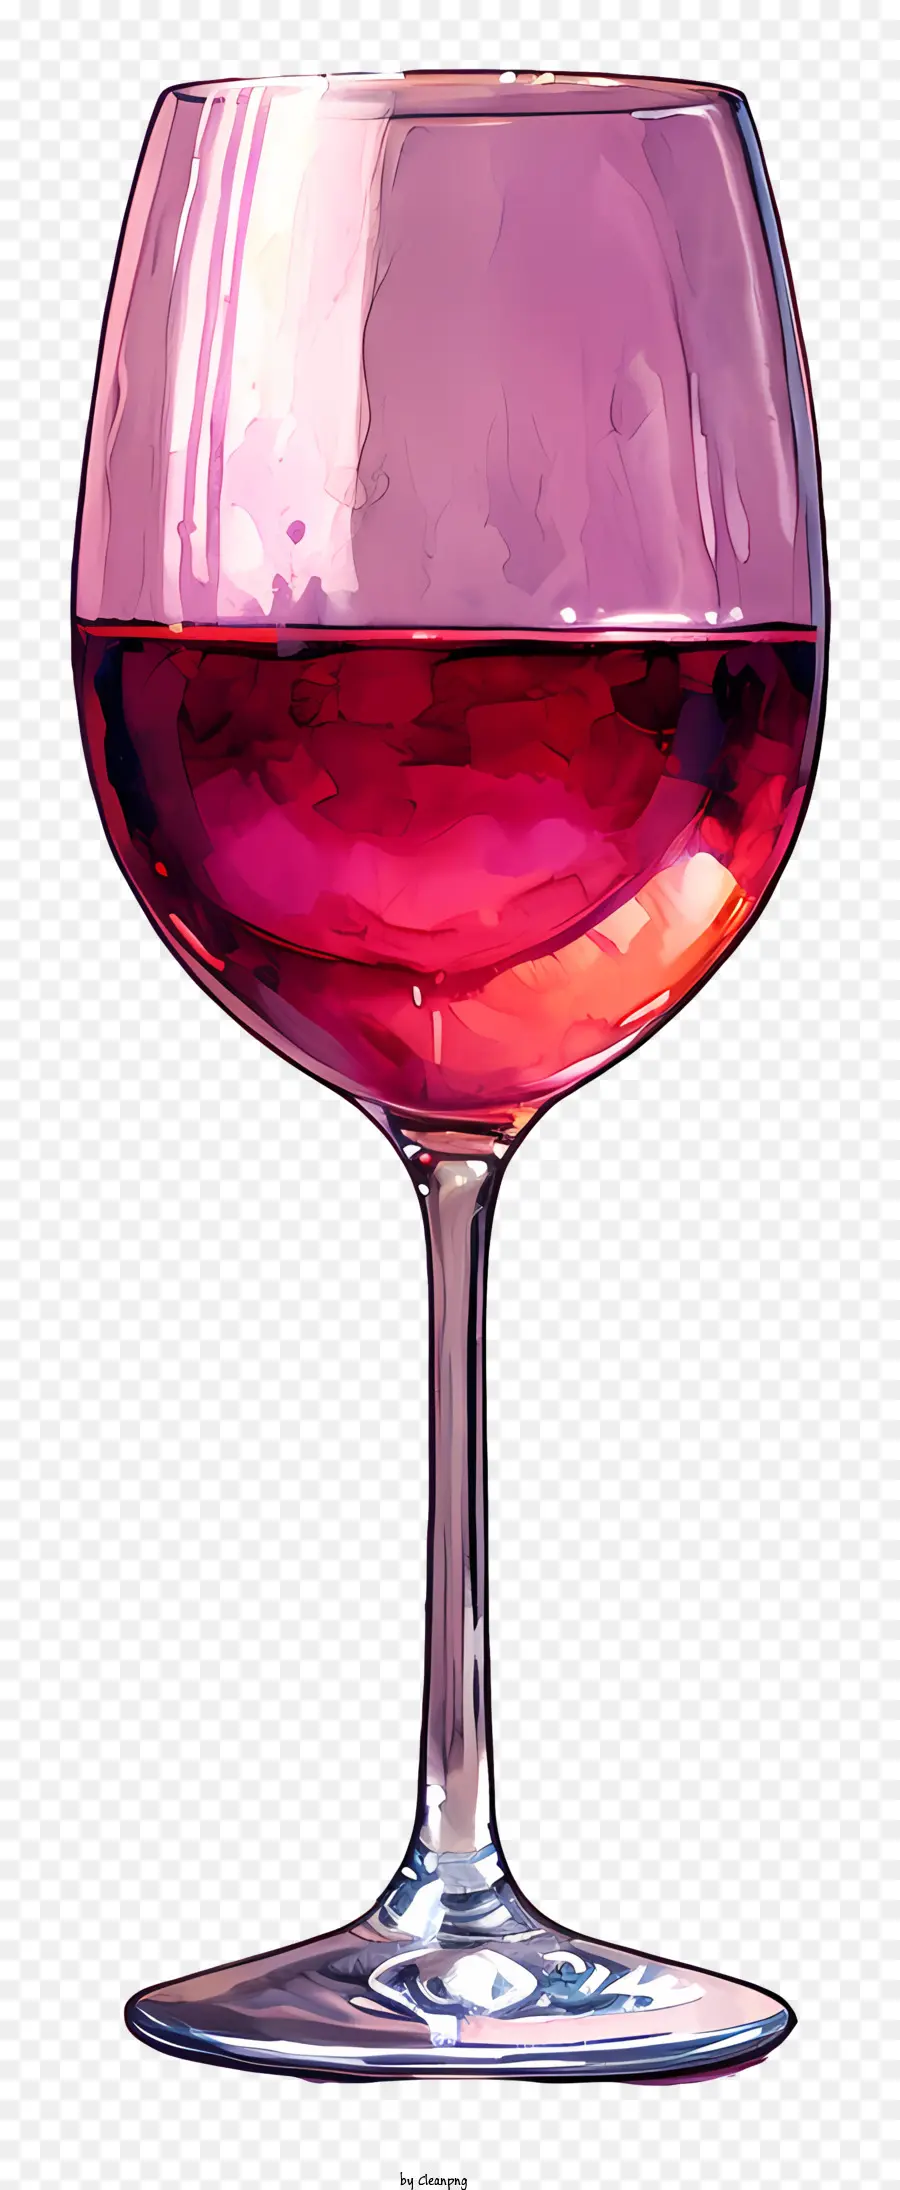 Weinglas - Weinglas mit rosa Wein auf der schwarzen Oberfläche